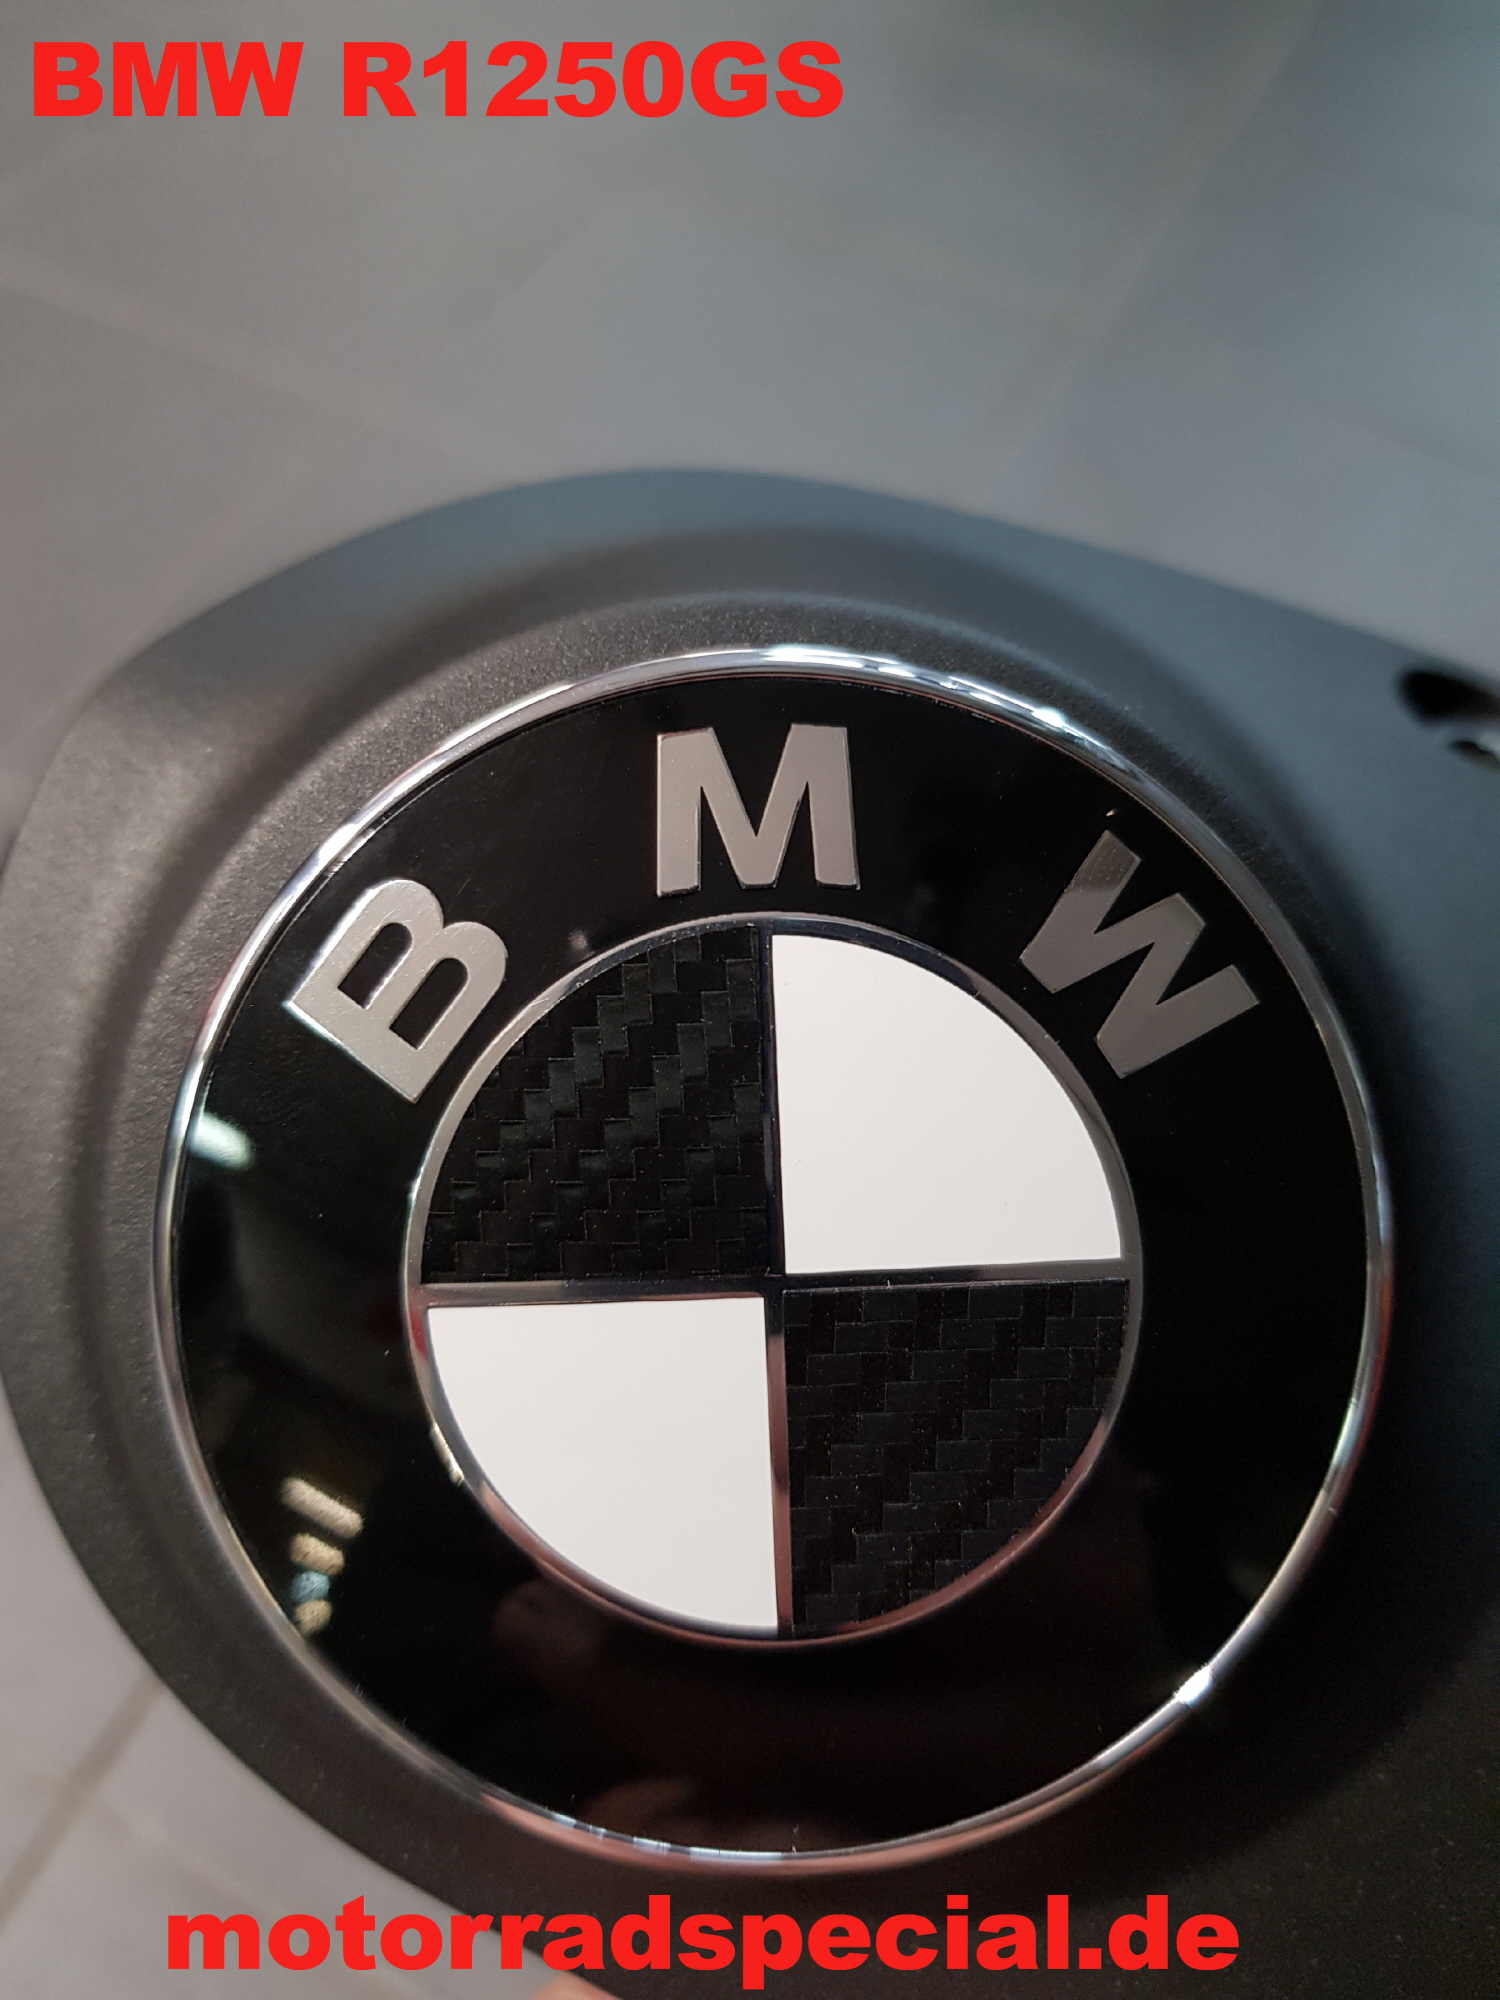 BMW Sticker Carbon pro Fahrzeug - Motorrad Special - Ihre